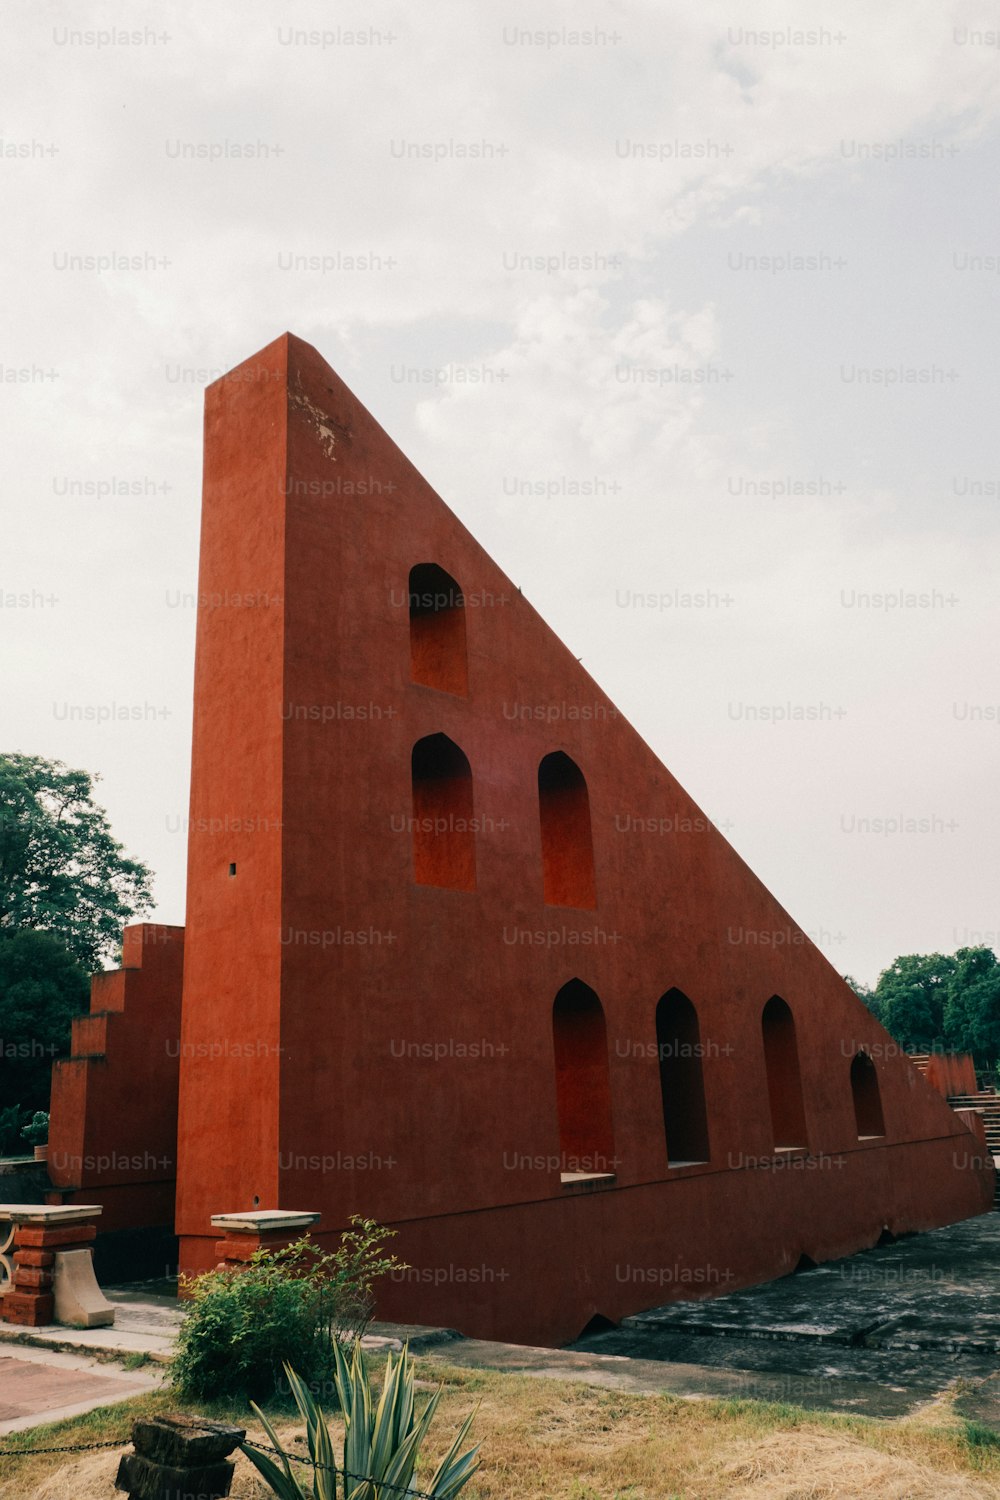 그 위에 삼각형 모양의 큰 �빨간색 건물